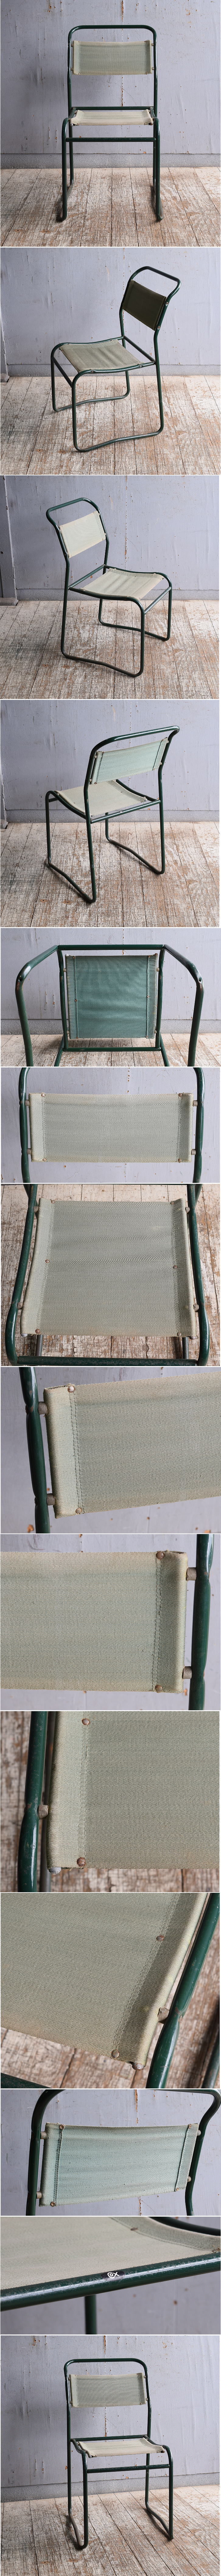 イギリス アンティーク カフェチェア スタッキングチェア 椅子 11045